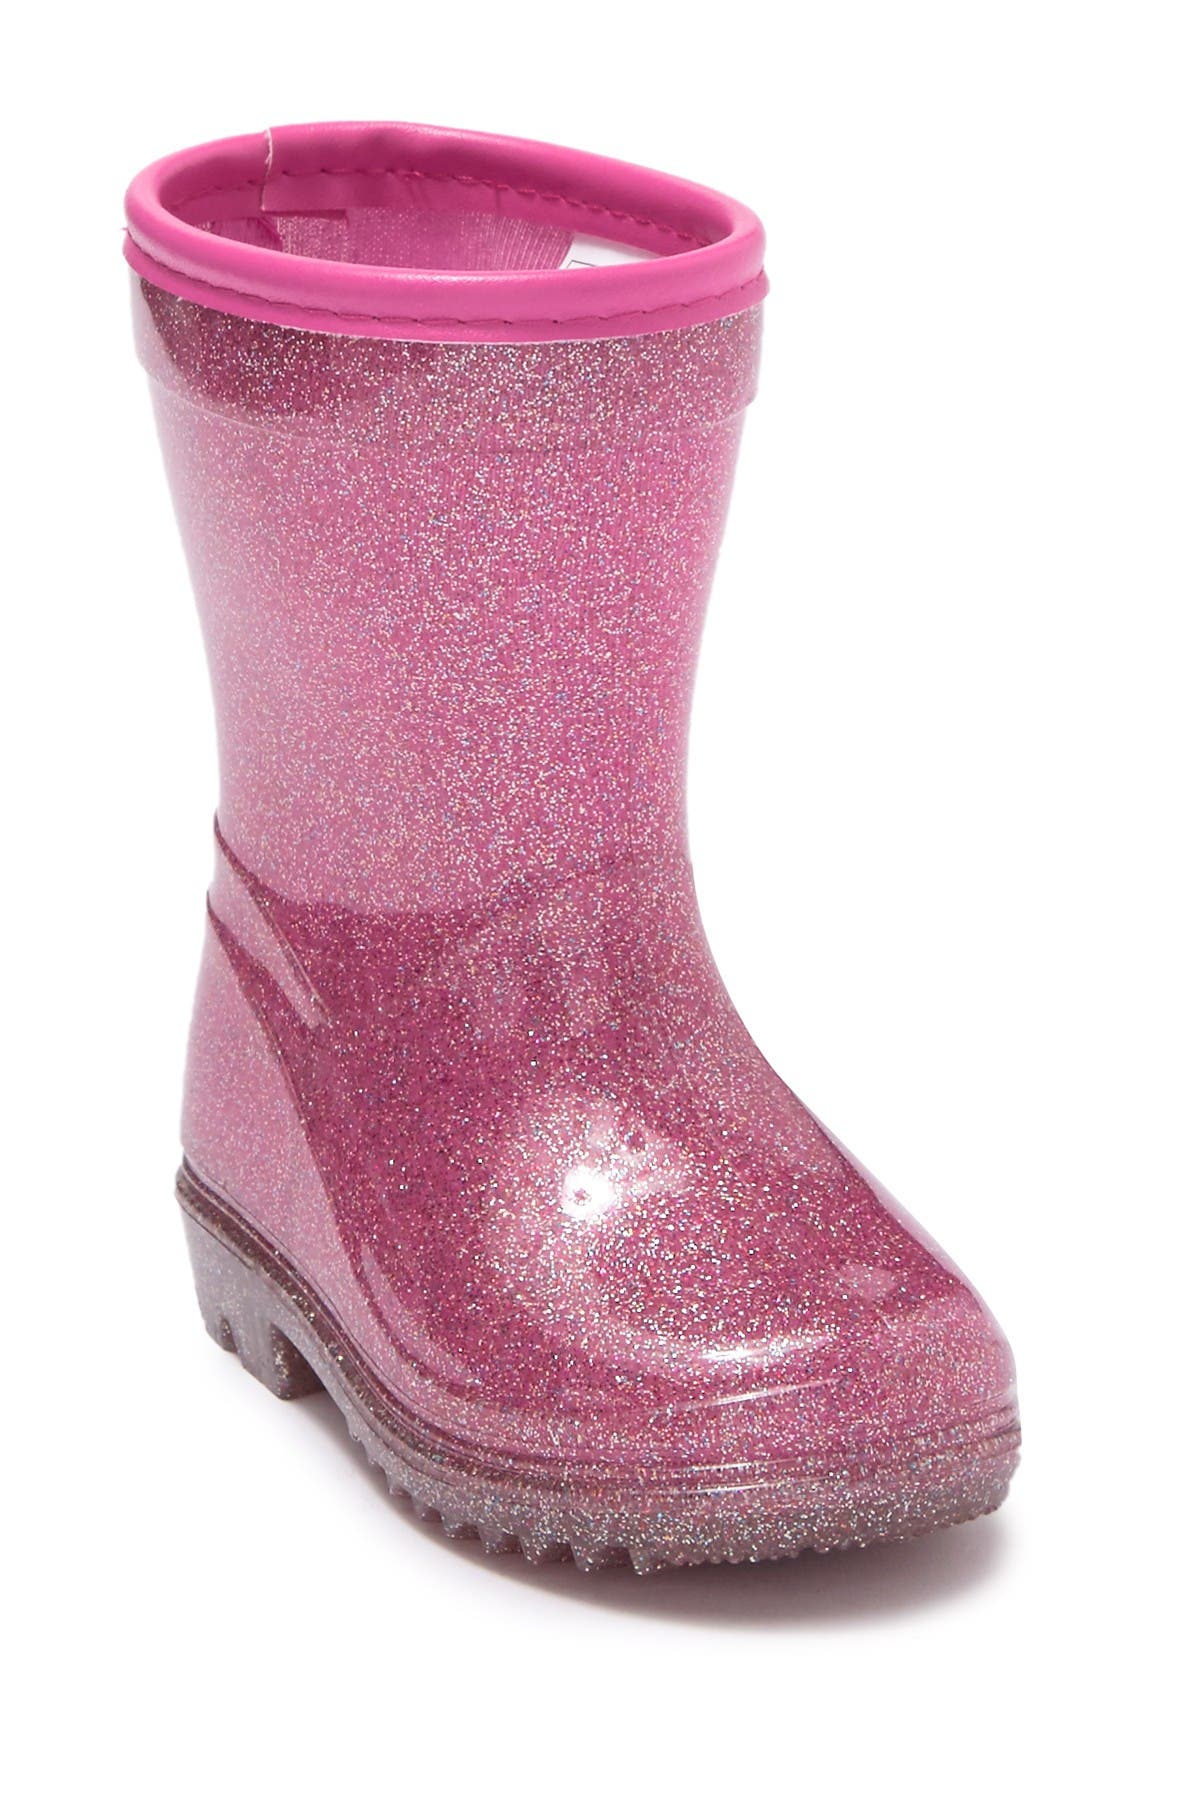 carter's glitter boots